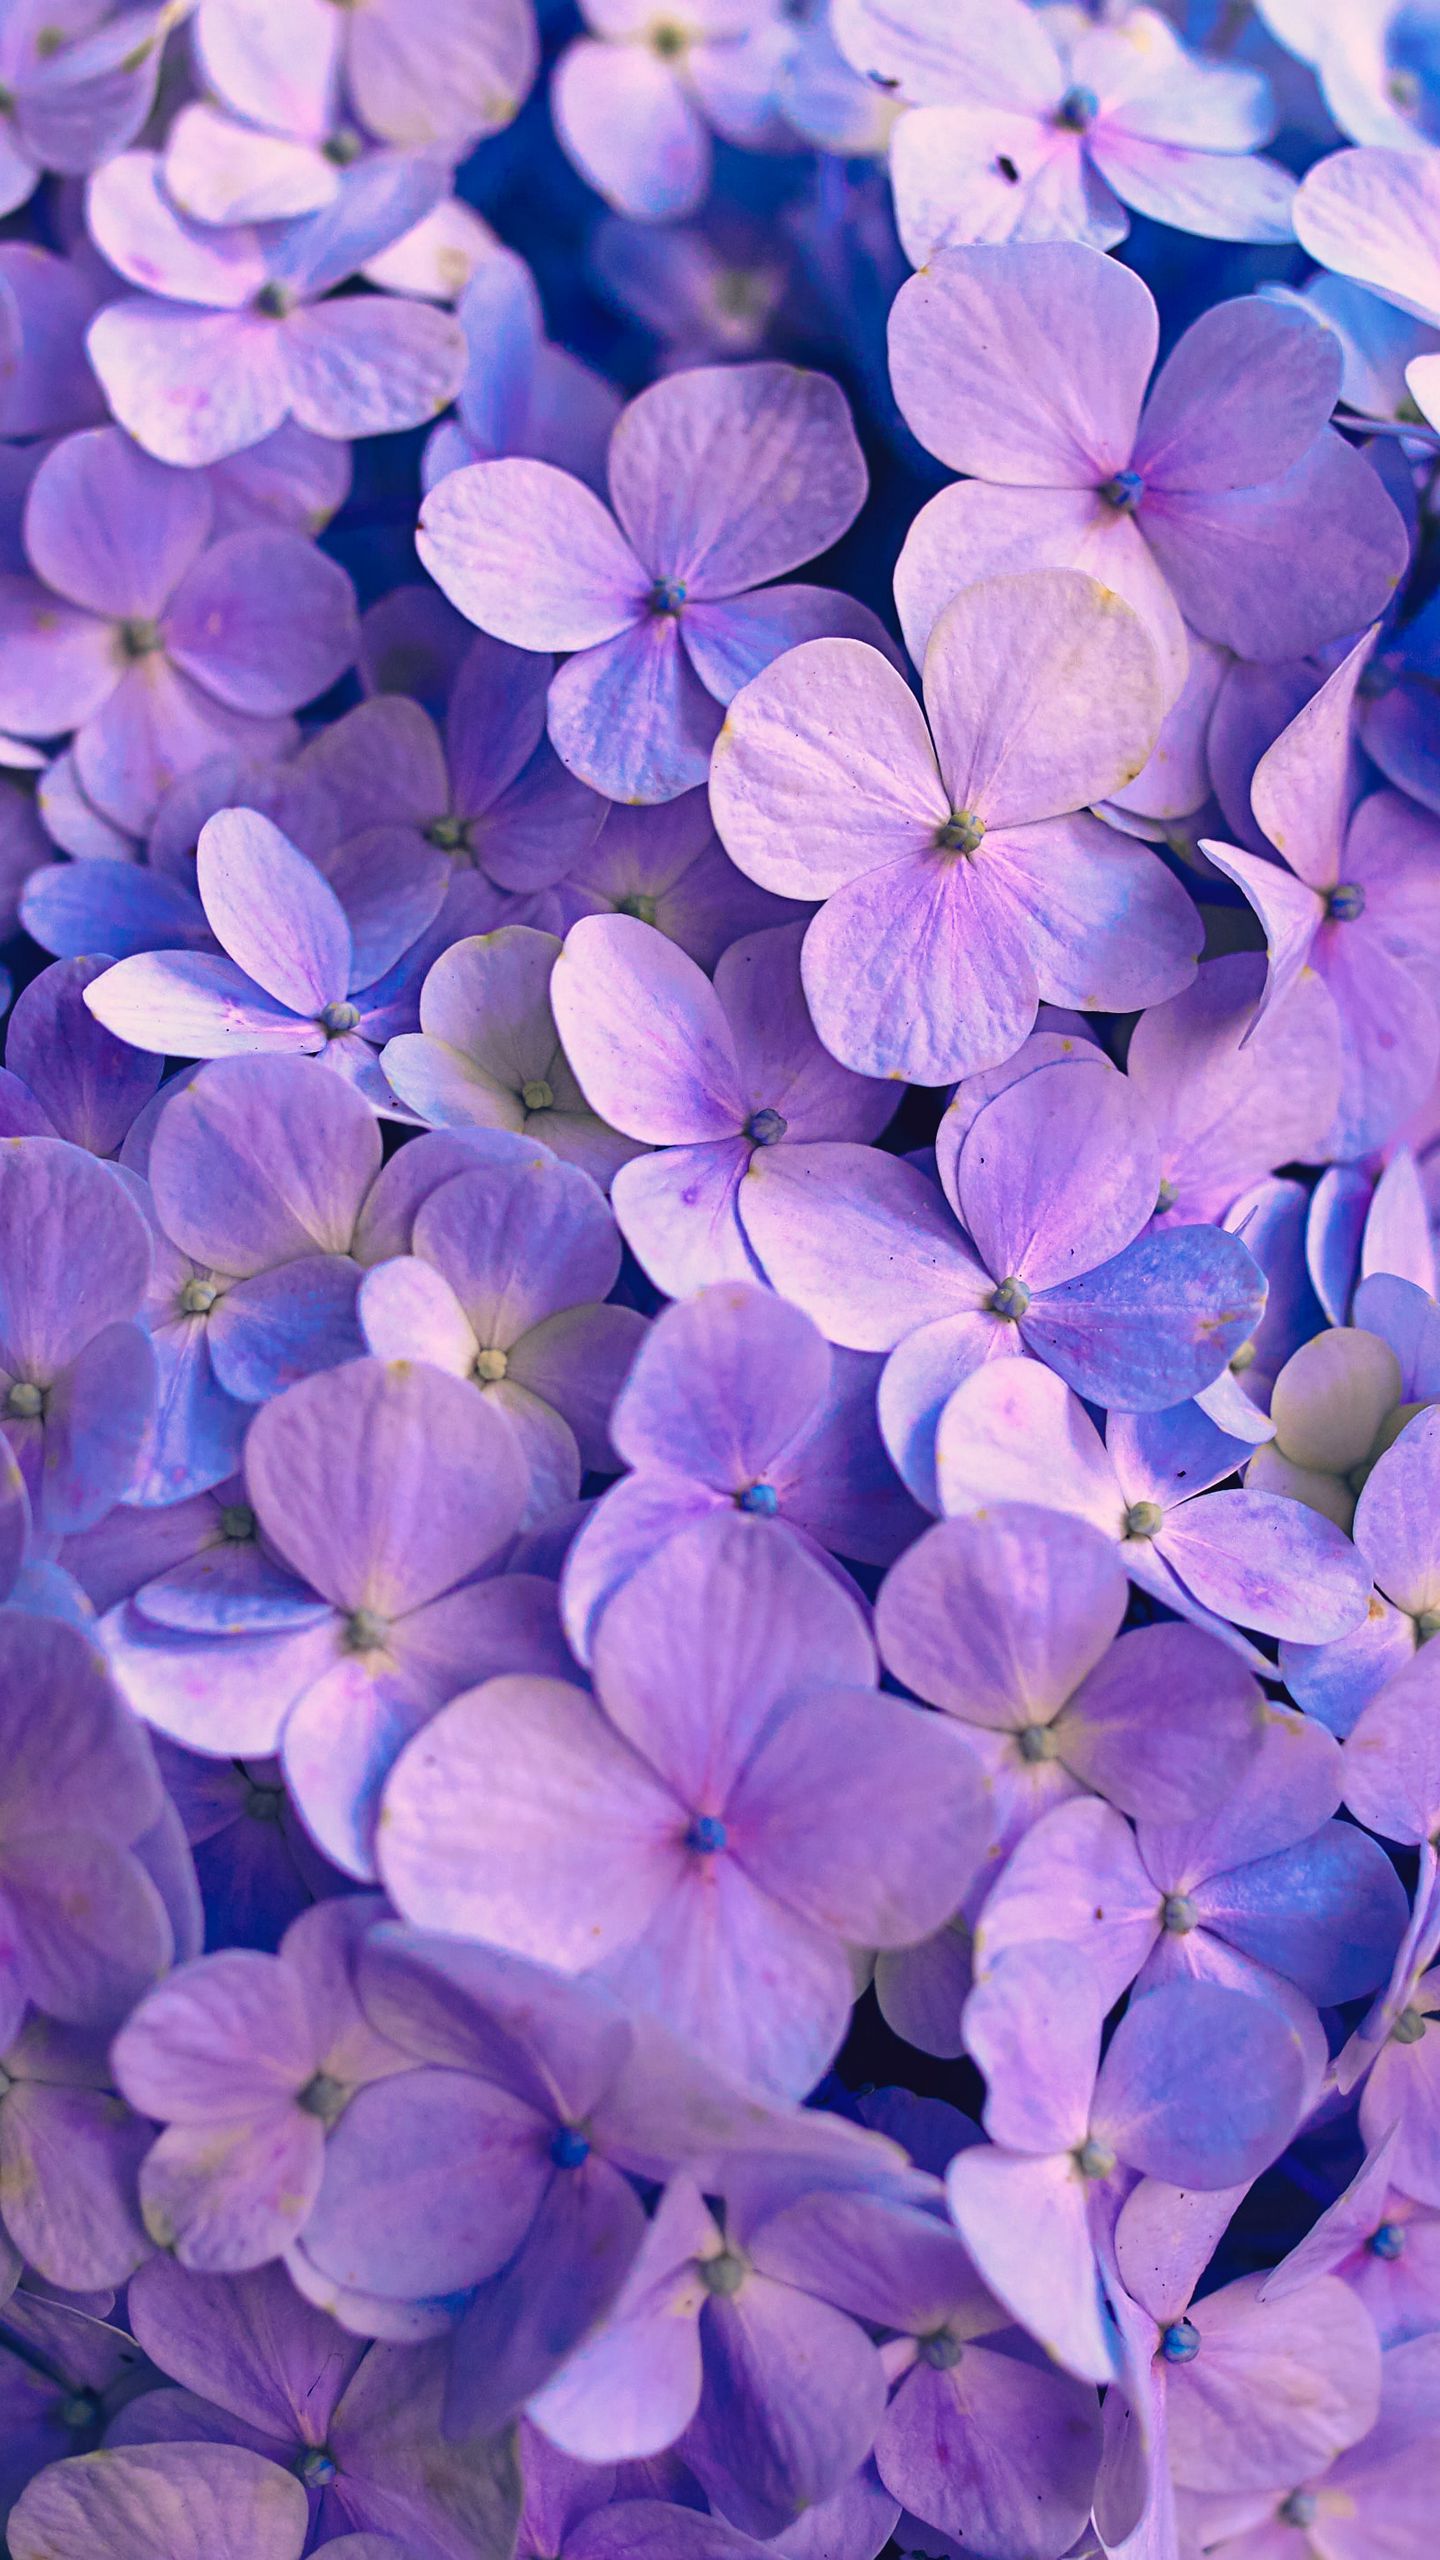 Hoa cẩm tú cầu là loại hoa đẹp và nổi tiếng với những nét độc đáo của chúng. Hãy ngắm nhìn các bông hoa cẩm tú cầu trong hình ảnh, với màu sắc tinh tế và hình dạng độc đáo sẽ khiến bạn cảm thấy thích thú.